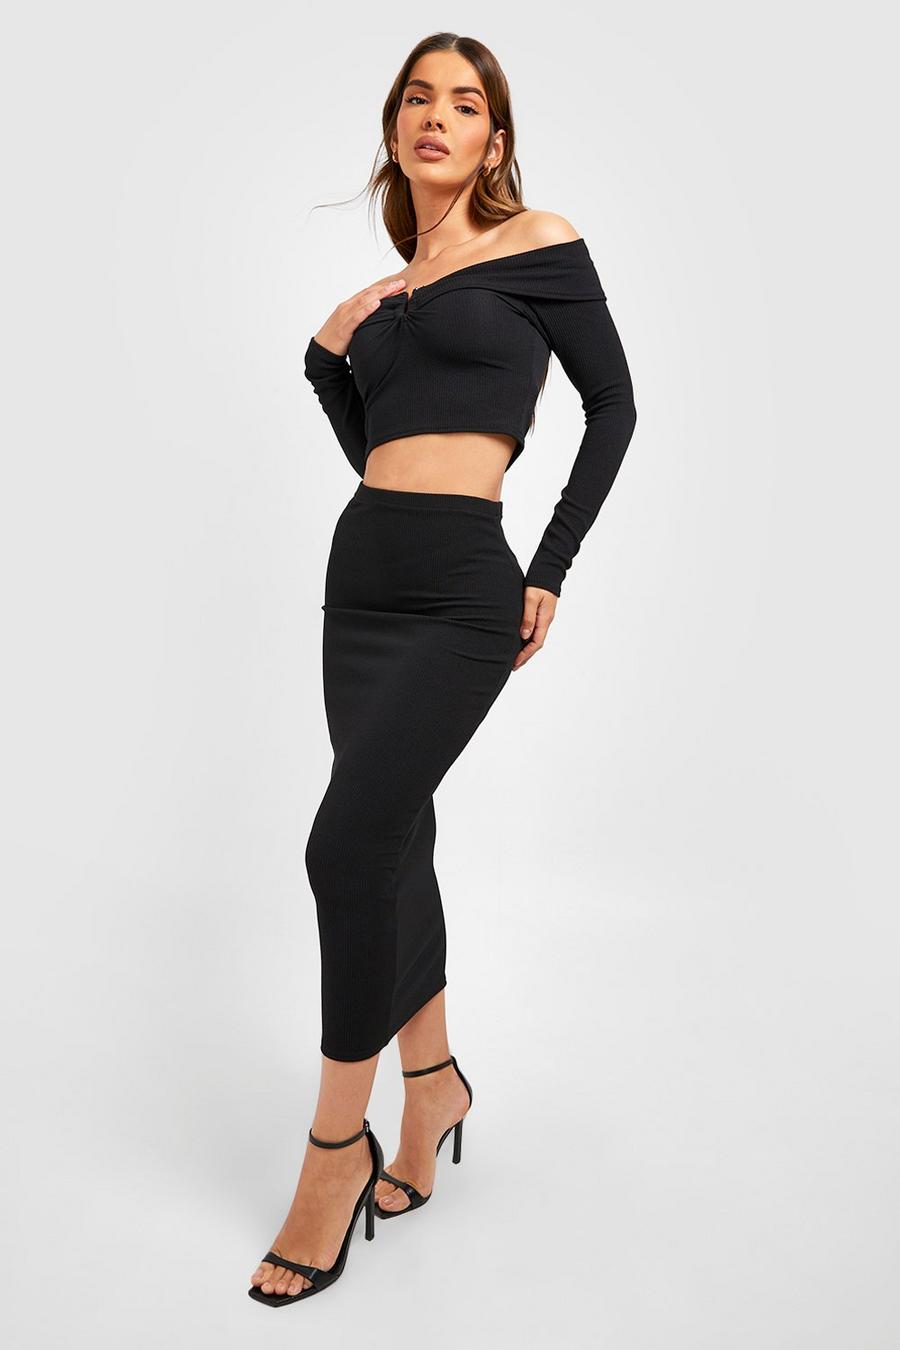 Black Ribbed Off The Shoulder Long Sleeved Top & Midi Skirt image number 1